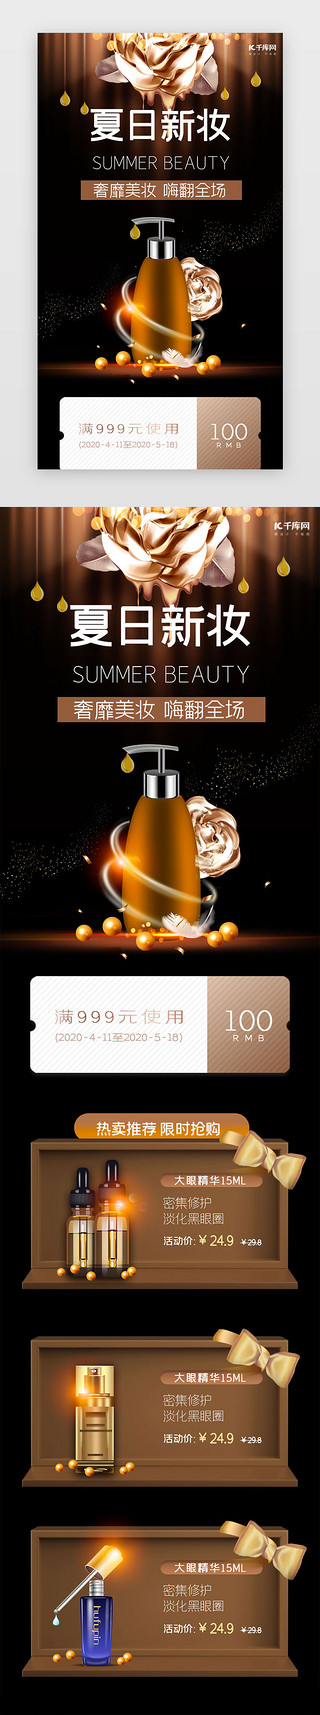 护肤品化妆品UI设计素材_棕色简约夏日美妆促销h5长图电商